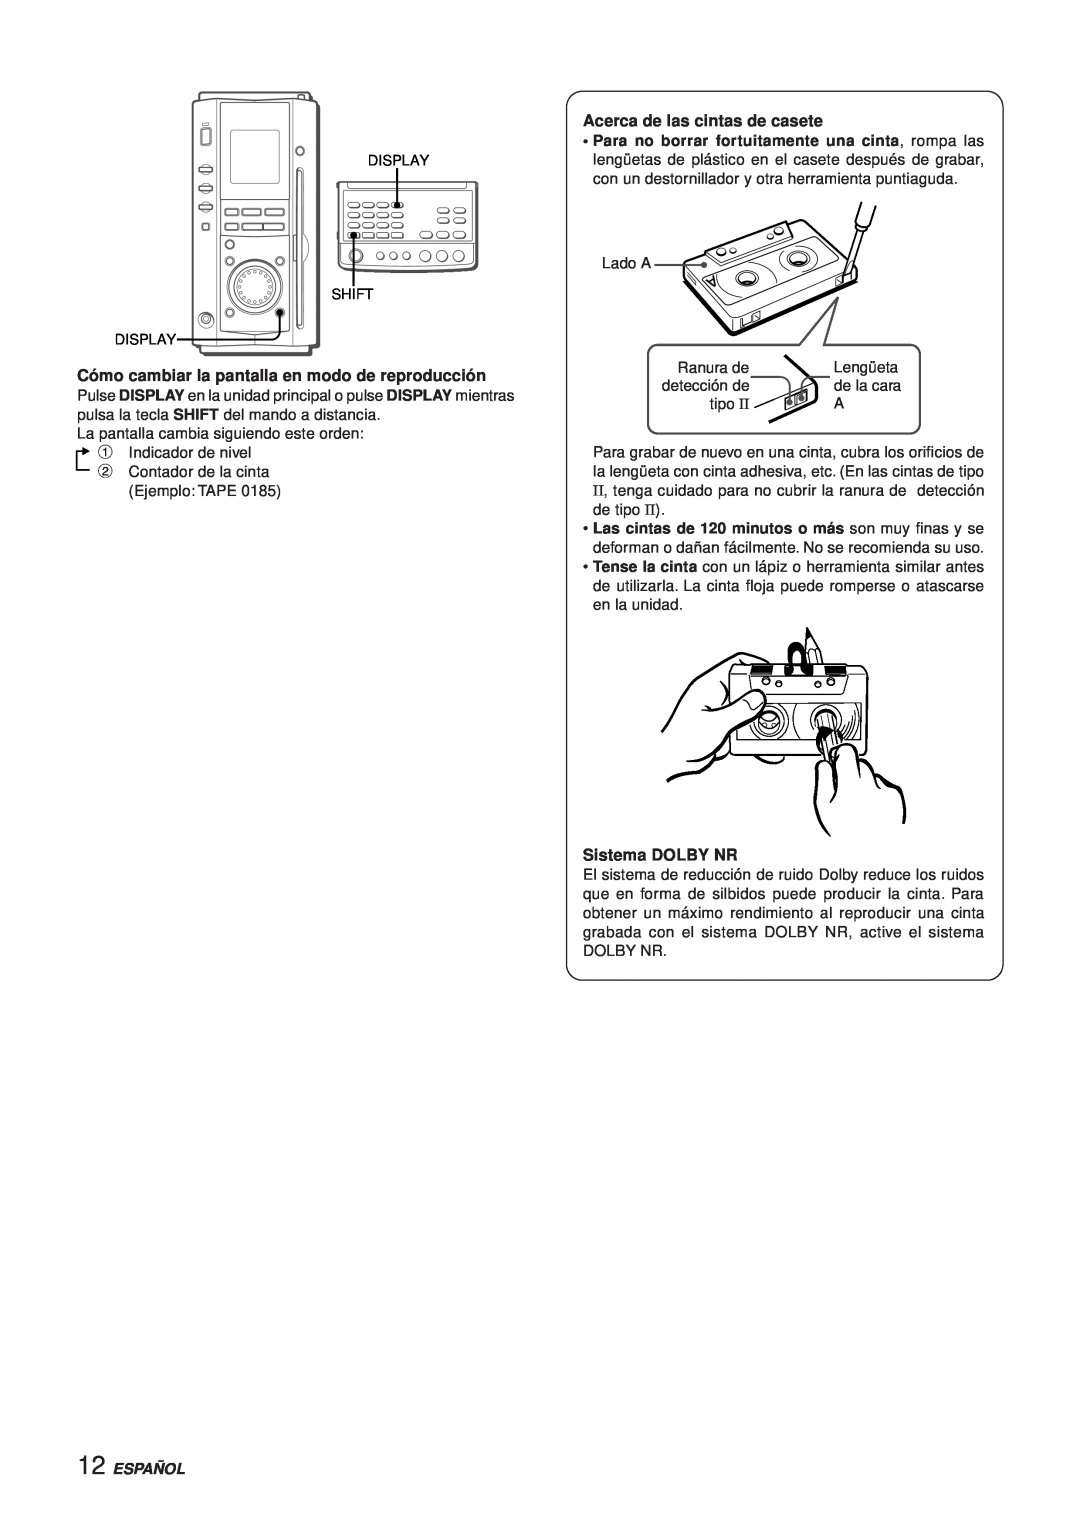 Aiwa XR-MS3 Cómo cambiar la pantalla en modo de reproducción, Acerca de las cintas de casete, Sistema DOLBY NR, Español 